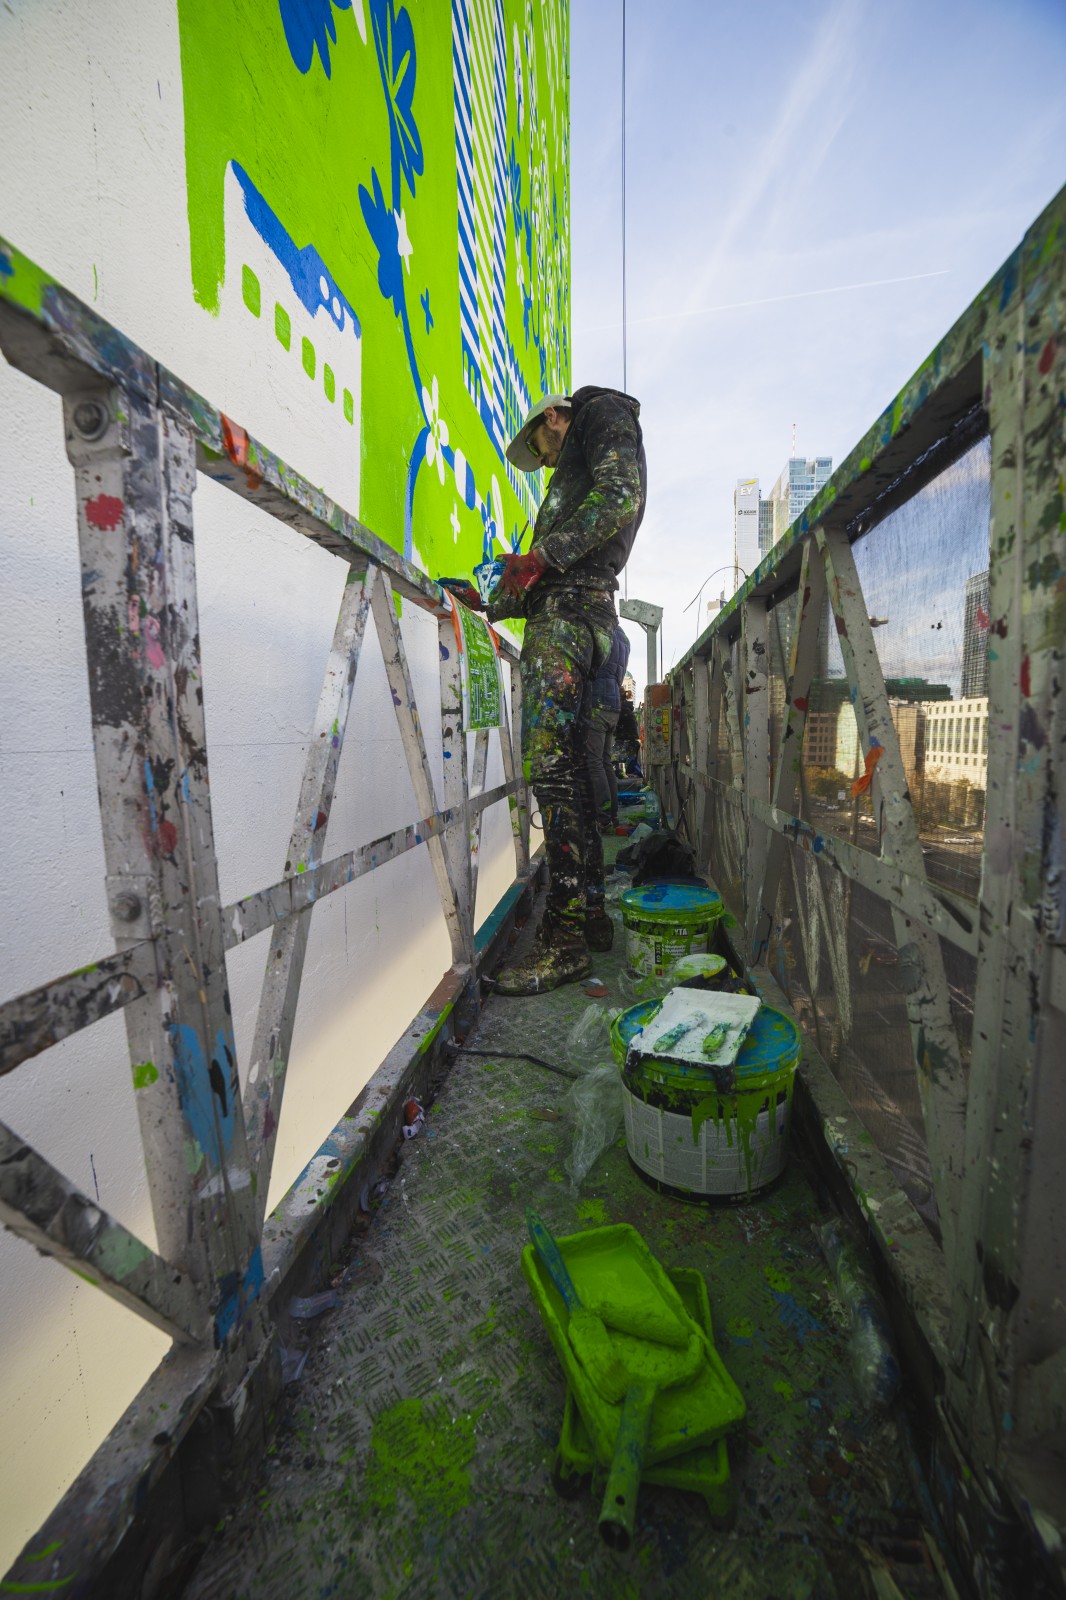 Artysta maluje projekt Jana Kallwejta na budynku przy ulicy Chmielnej | Zielona Energia dla Warszawy | Portfolio